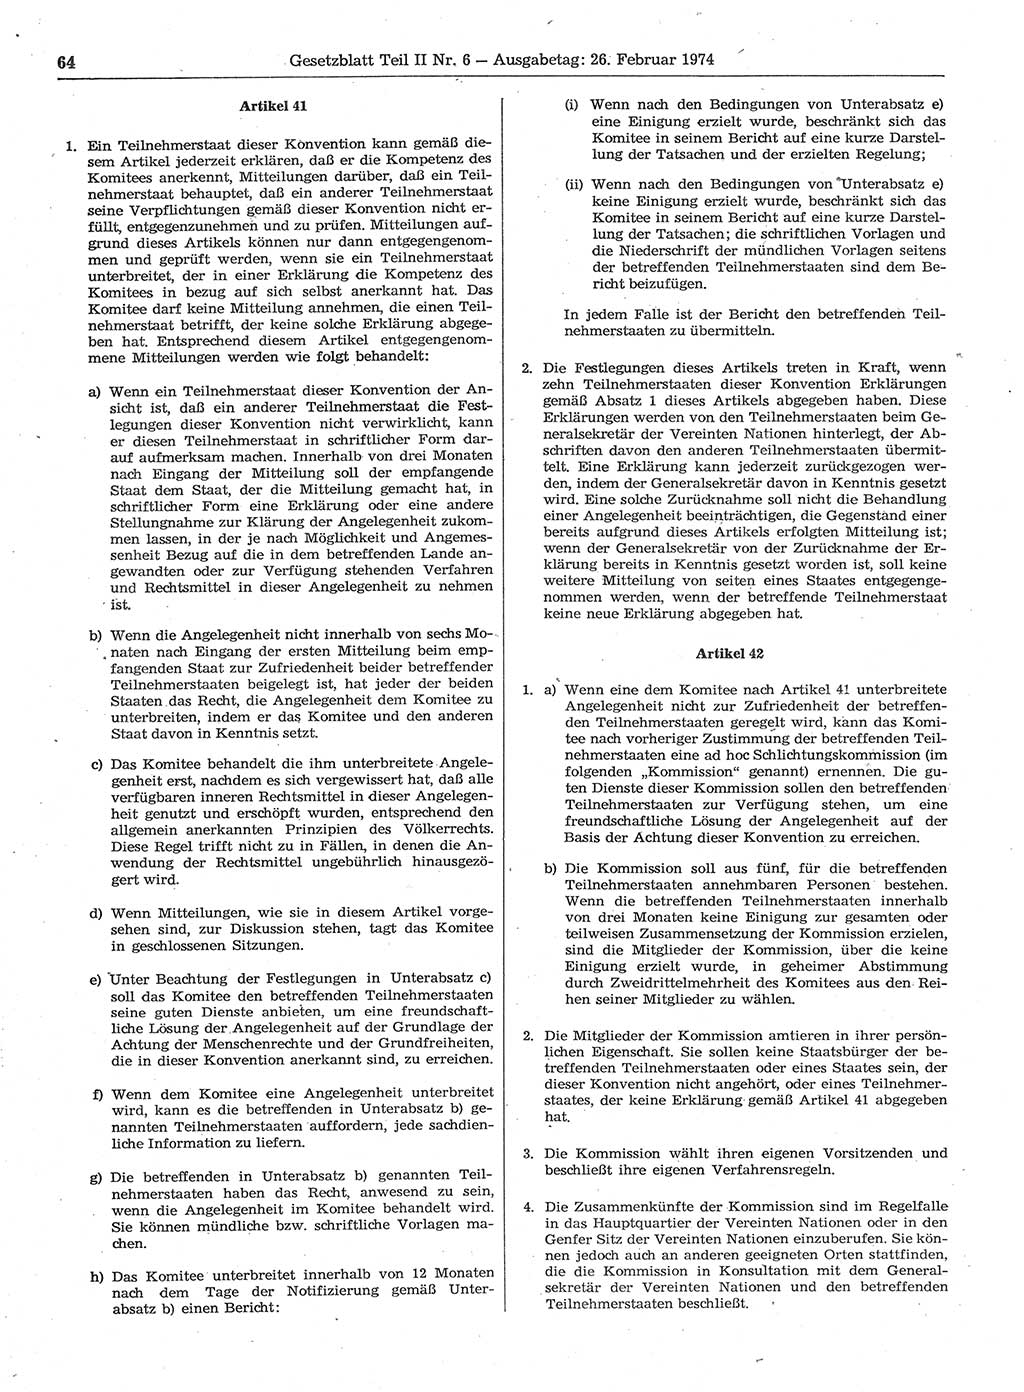 Gesetzblatt (GBl.) der Deutschen Demokratischen Republik (DDR) Teil ⅠⅠ 1974, Seite 64 (GBl. DDR ⅠⅠ 1974, S. 64)